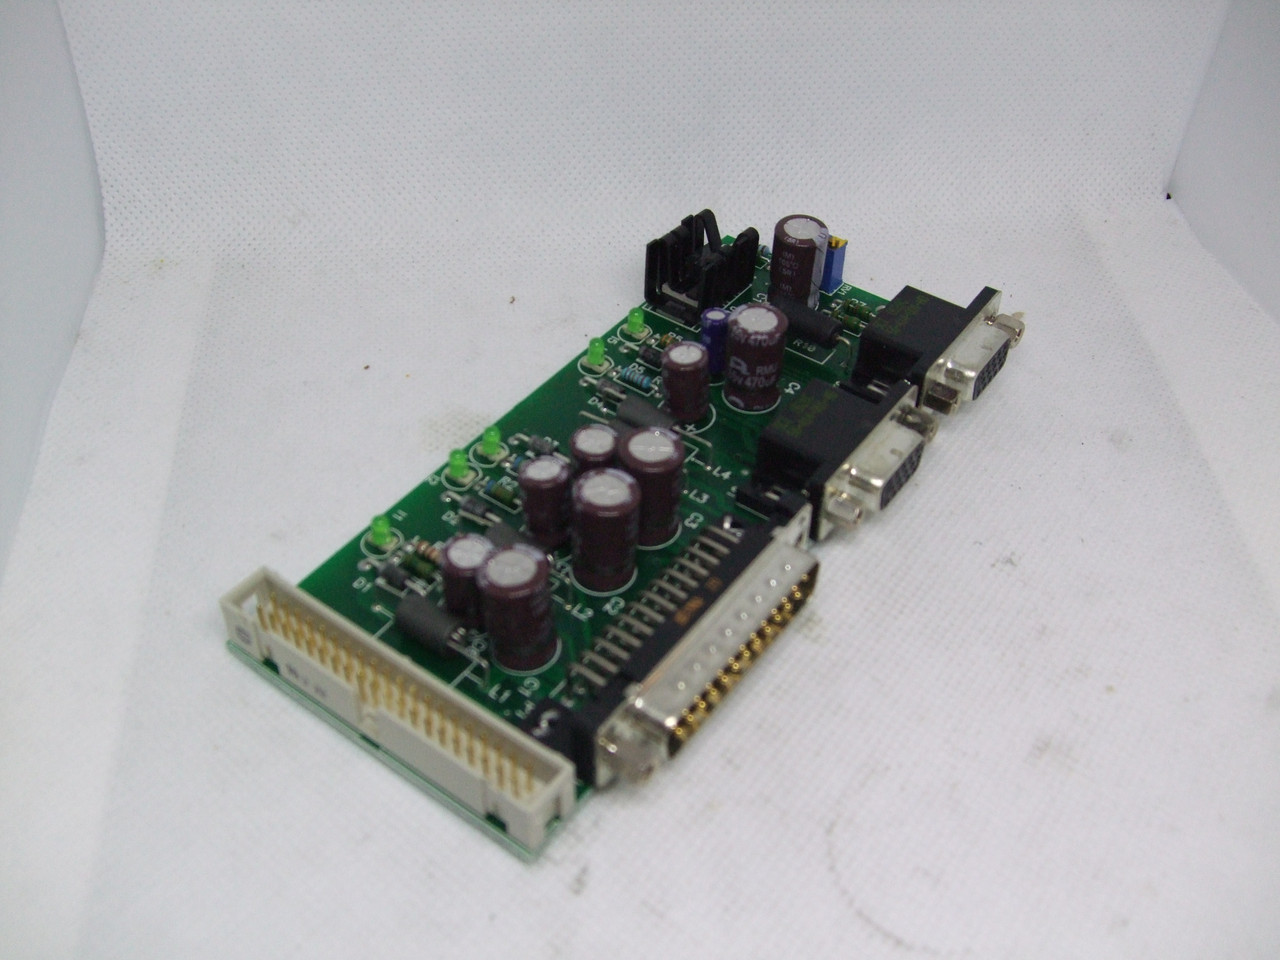 Thermo Scientific 23648685 CS MFS_PI Power Interface Board